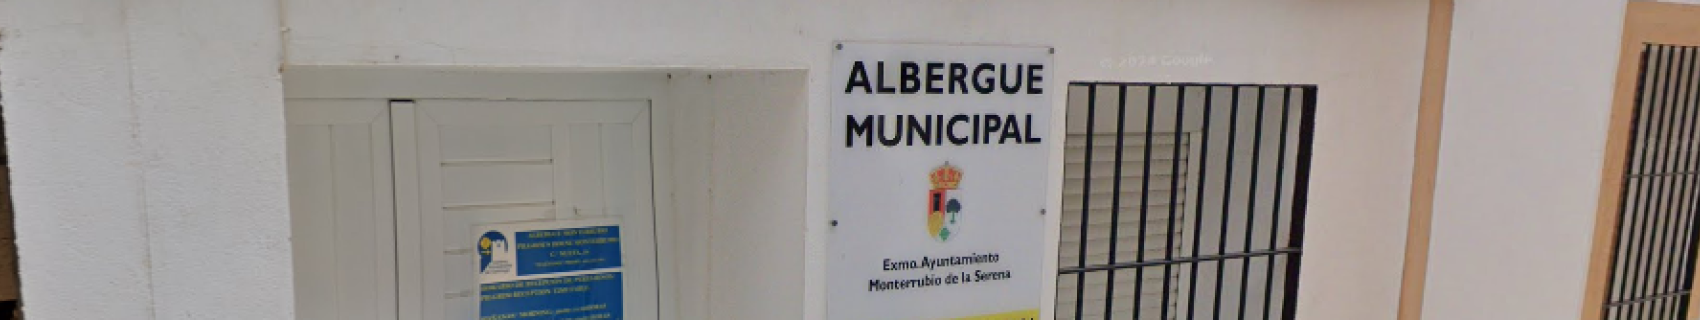 Lbergue municipal